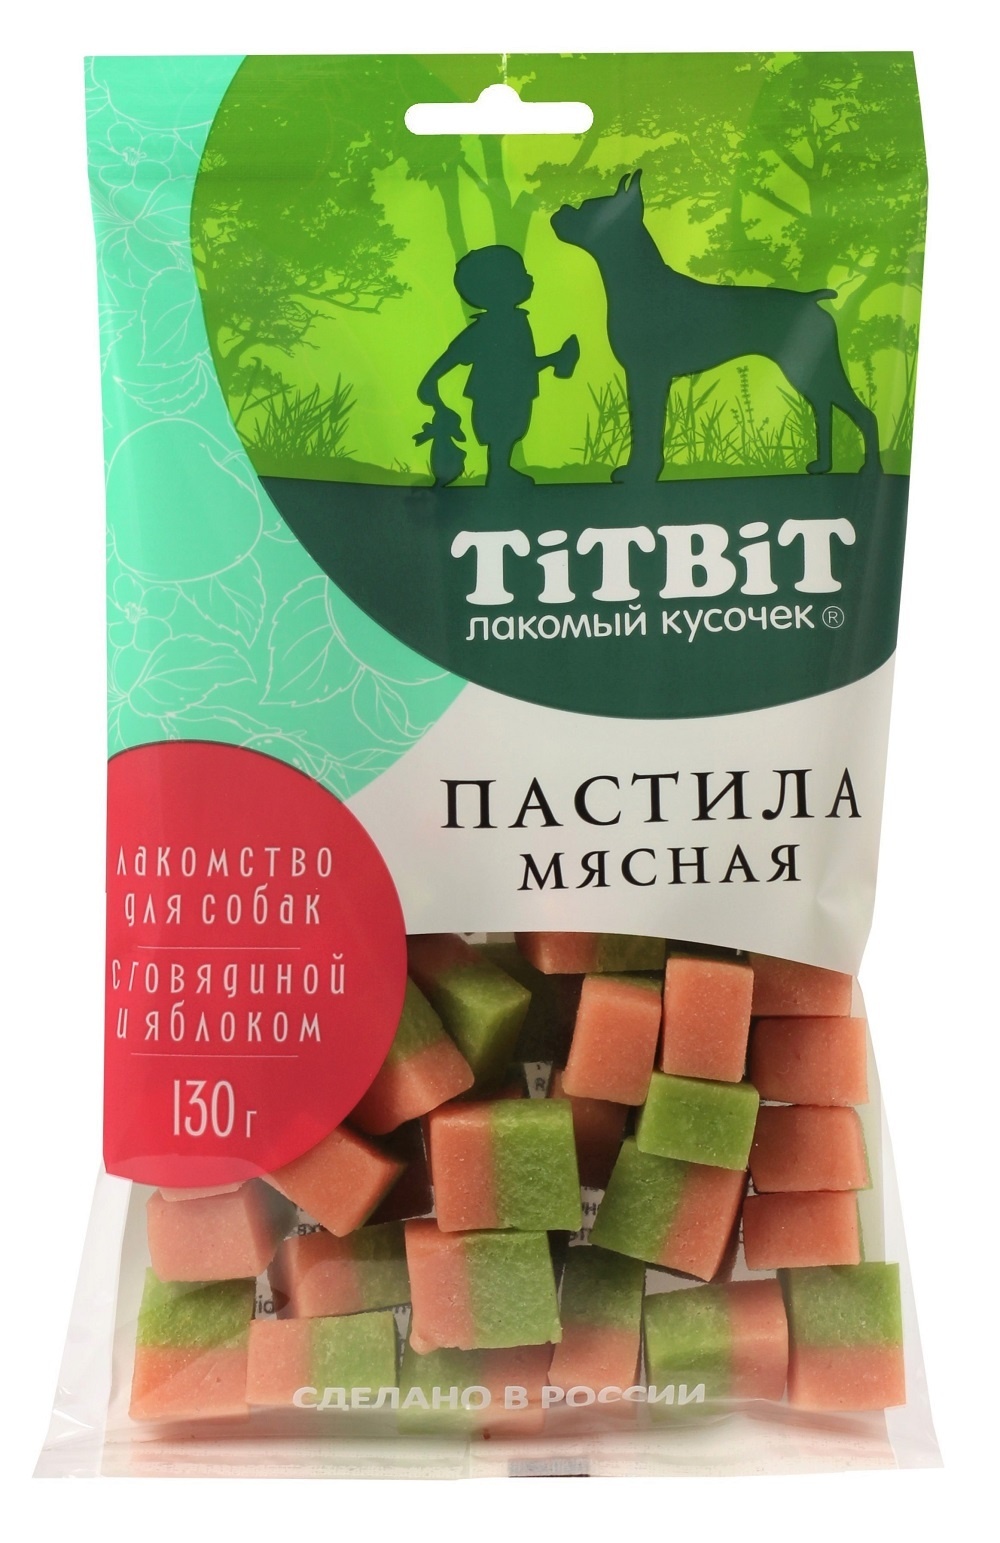 TiTBiT TiTBiT пастила мясная с говядиной и яблоком, лакомство для собак (130 г)